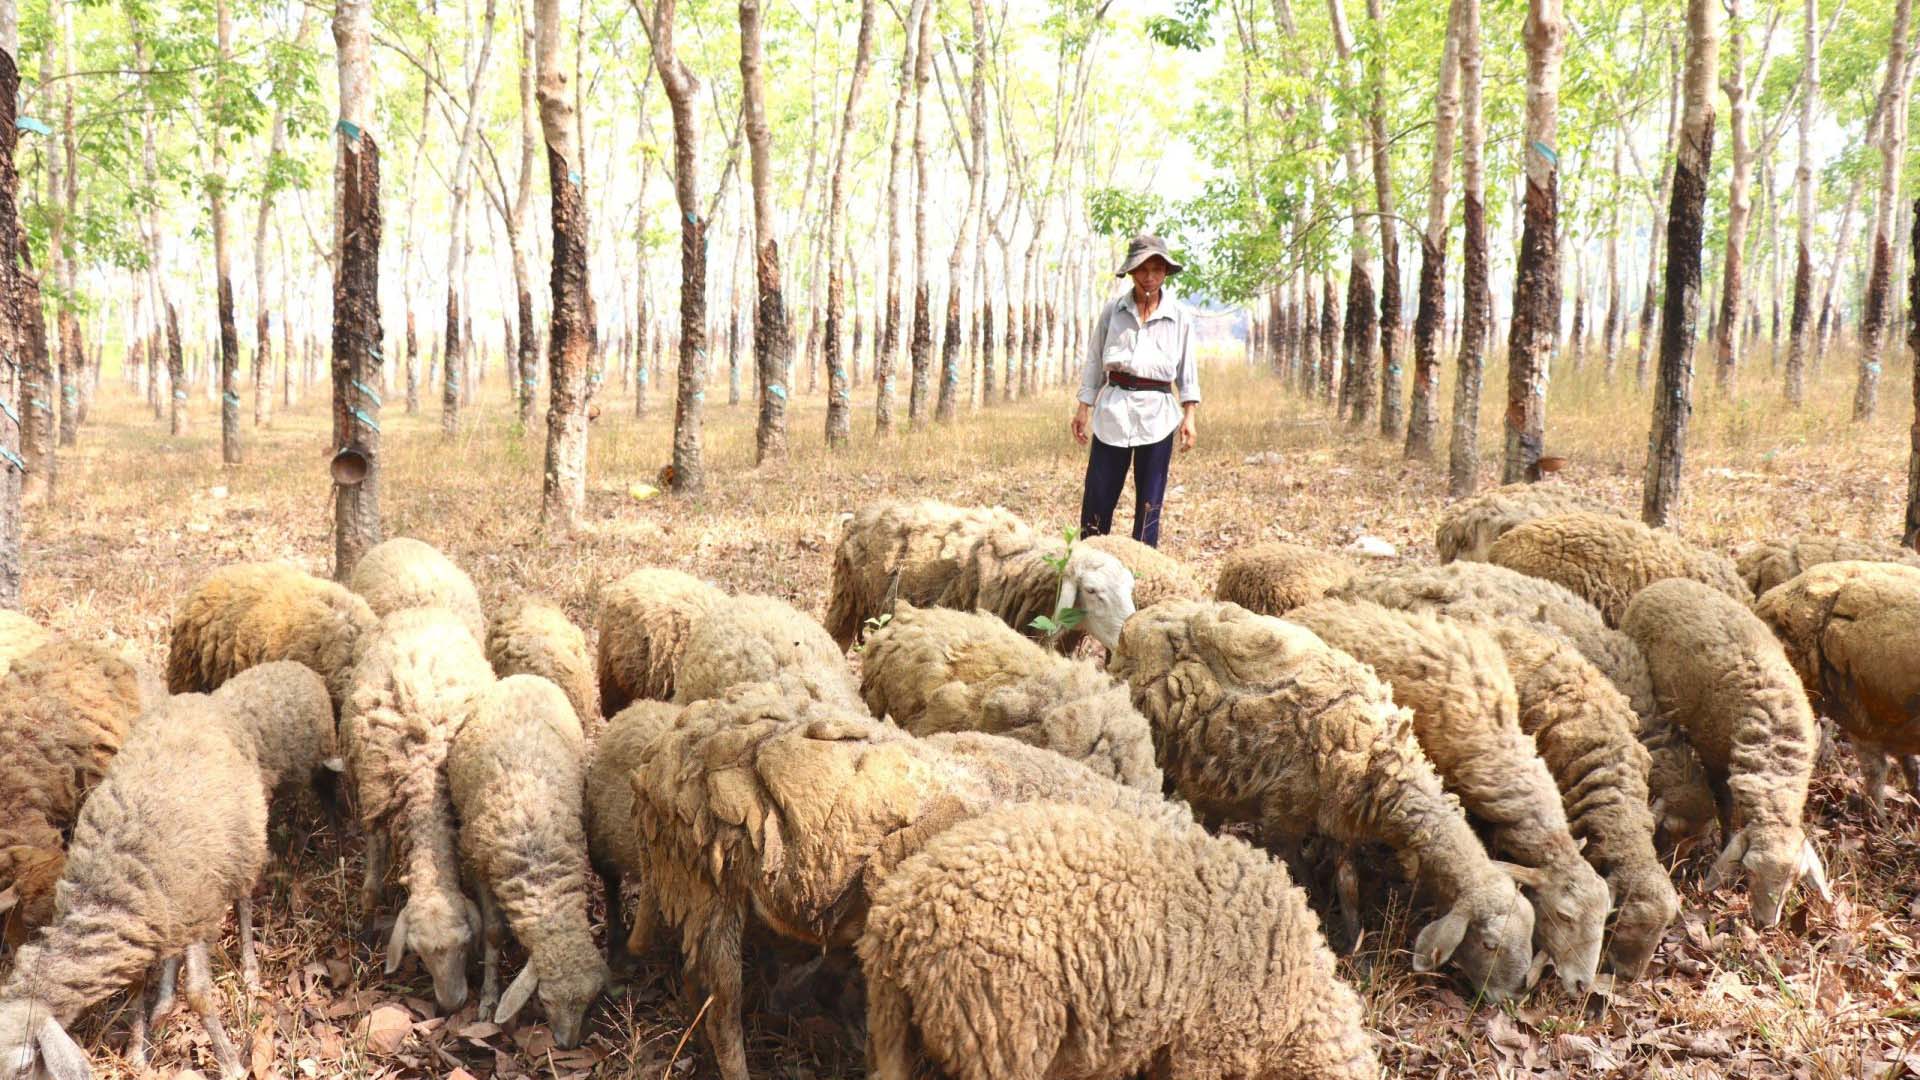 Tây Ninh: Độc đáo mô hình chăn nuôi cừu ở Bến Củi